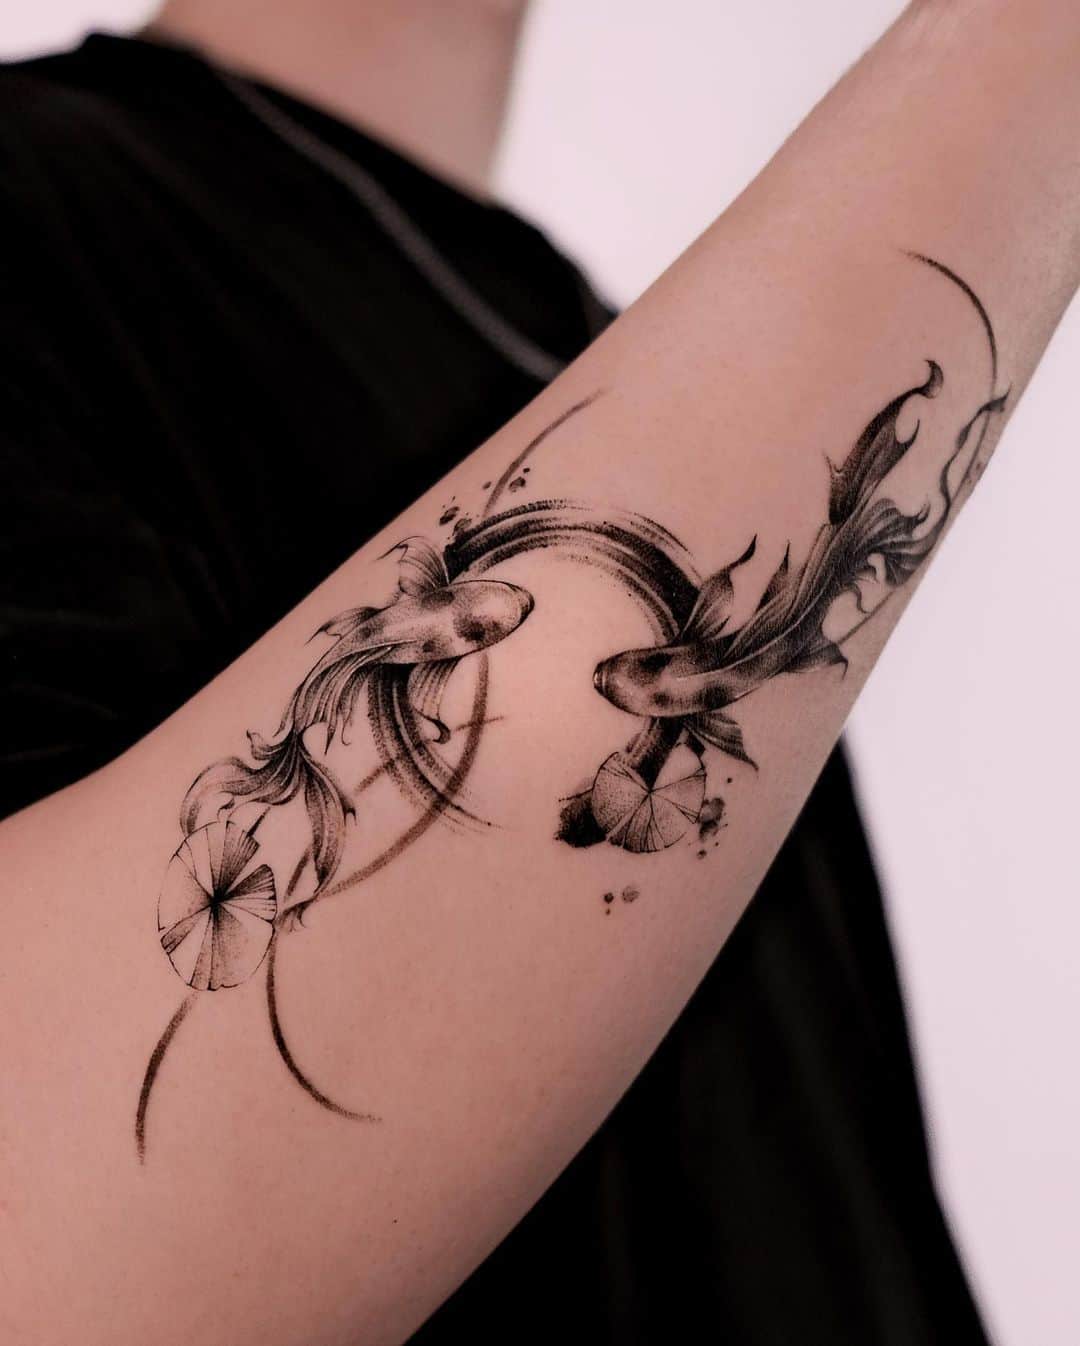 Fish tattoo by tattooist jaymee